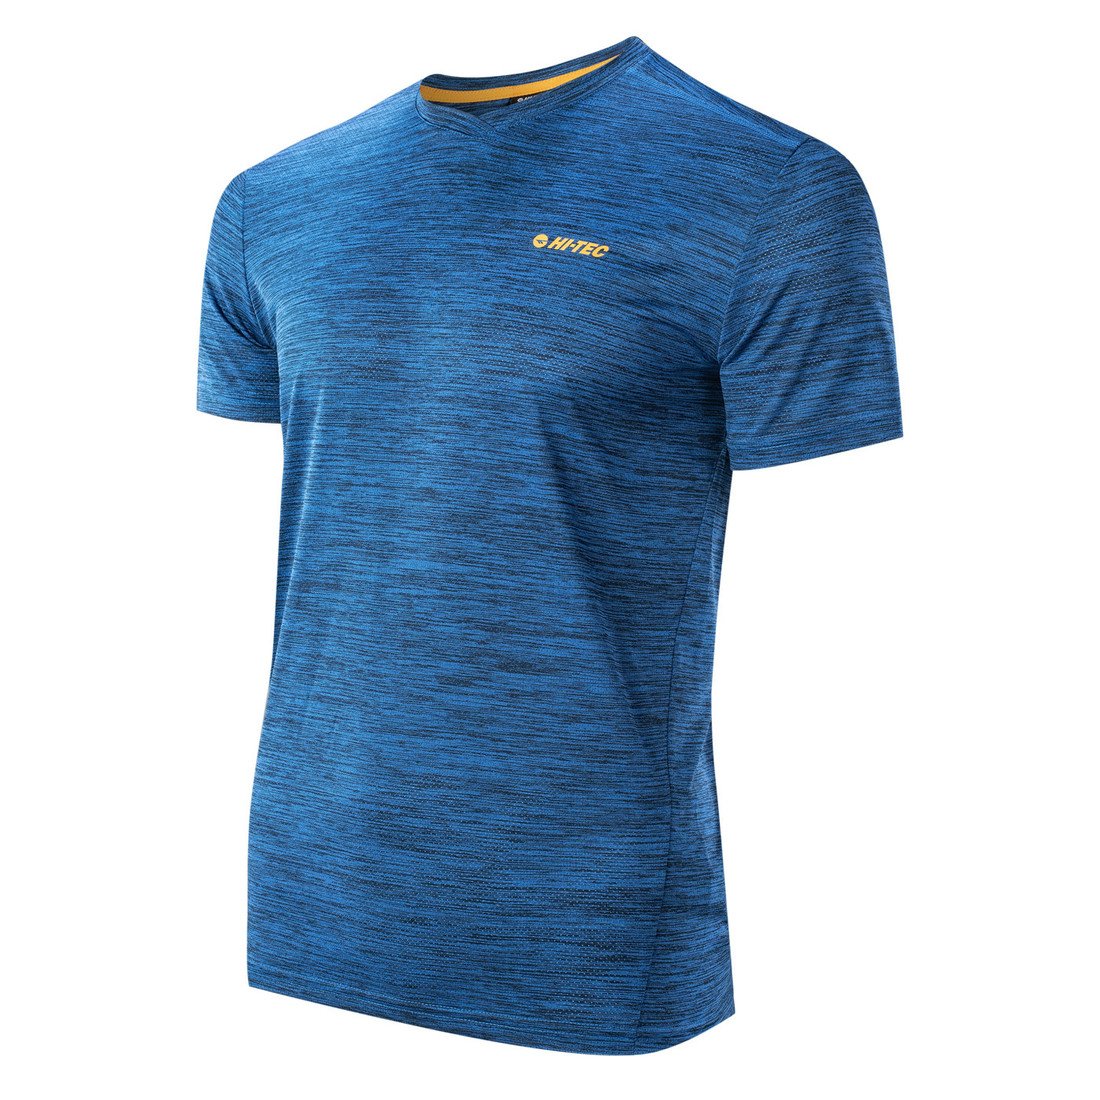 HI-TEC Hicti - pánské sportovní tričko (modré) Velikost: XL